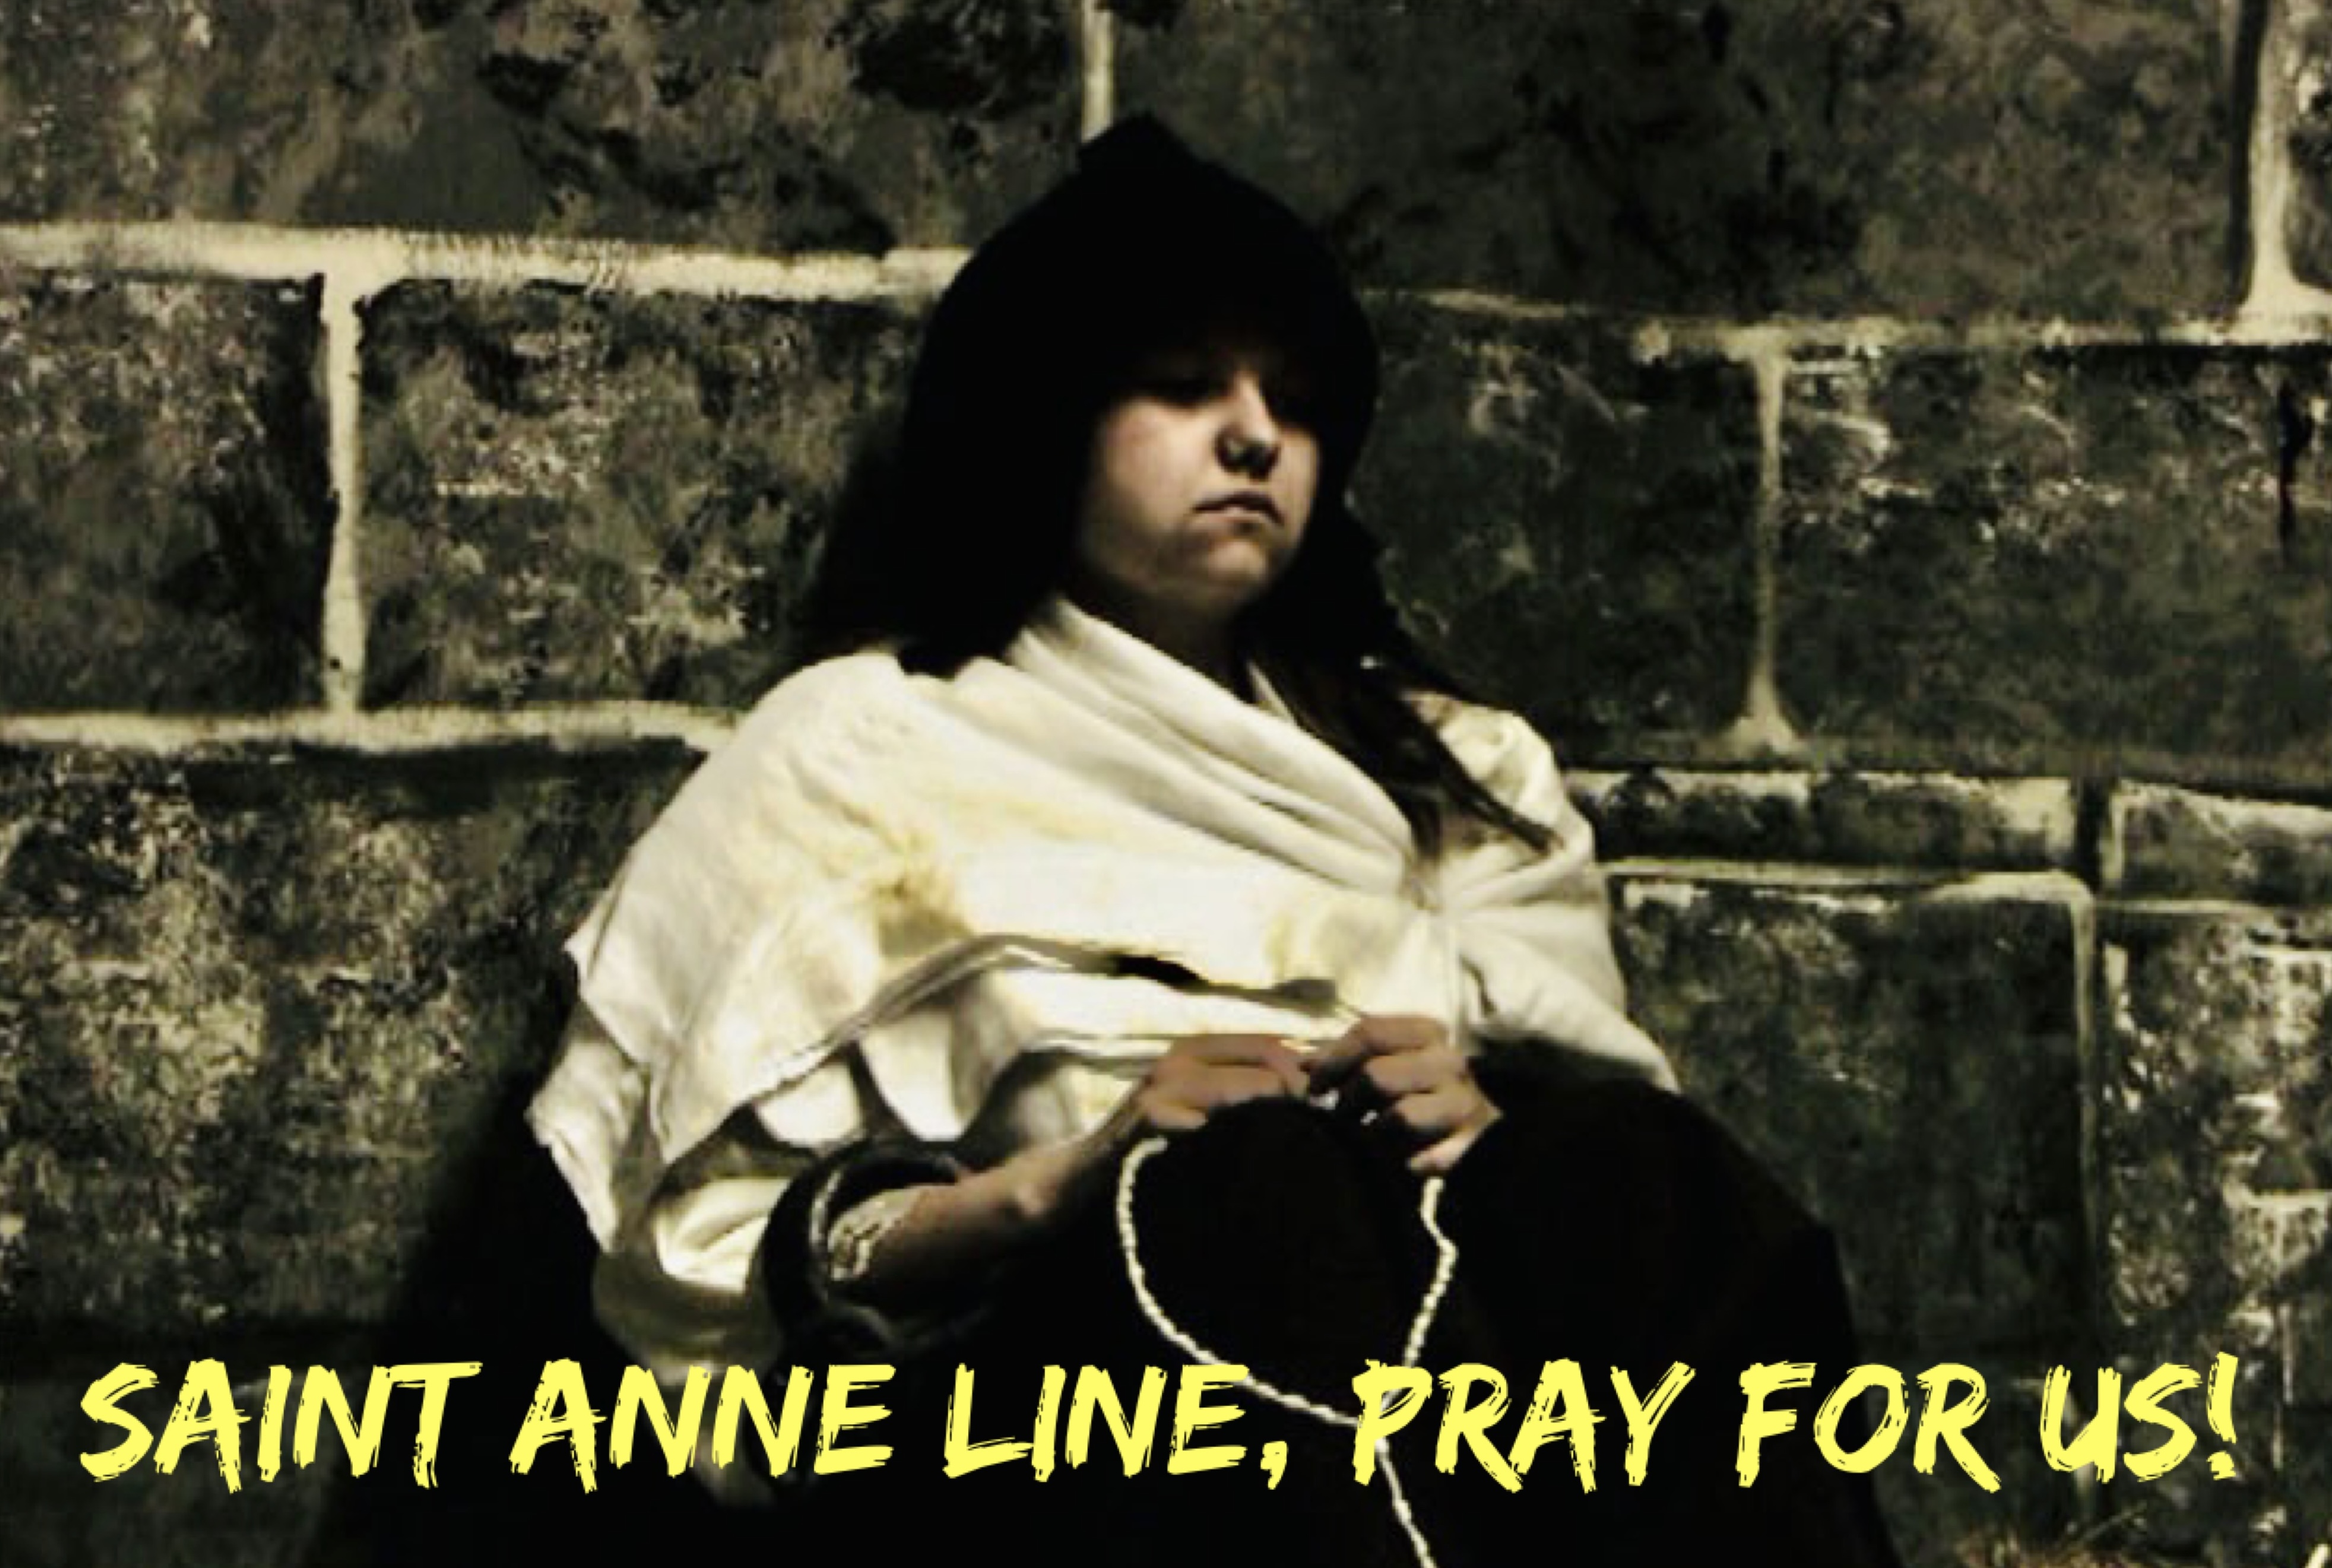 27th February – Saint Anne Line